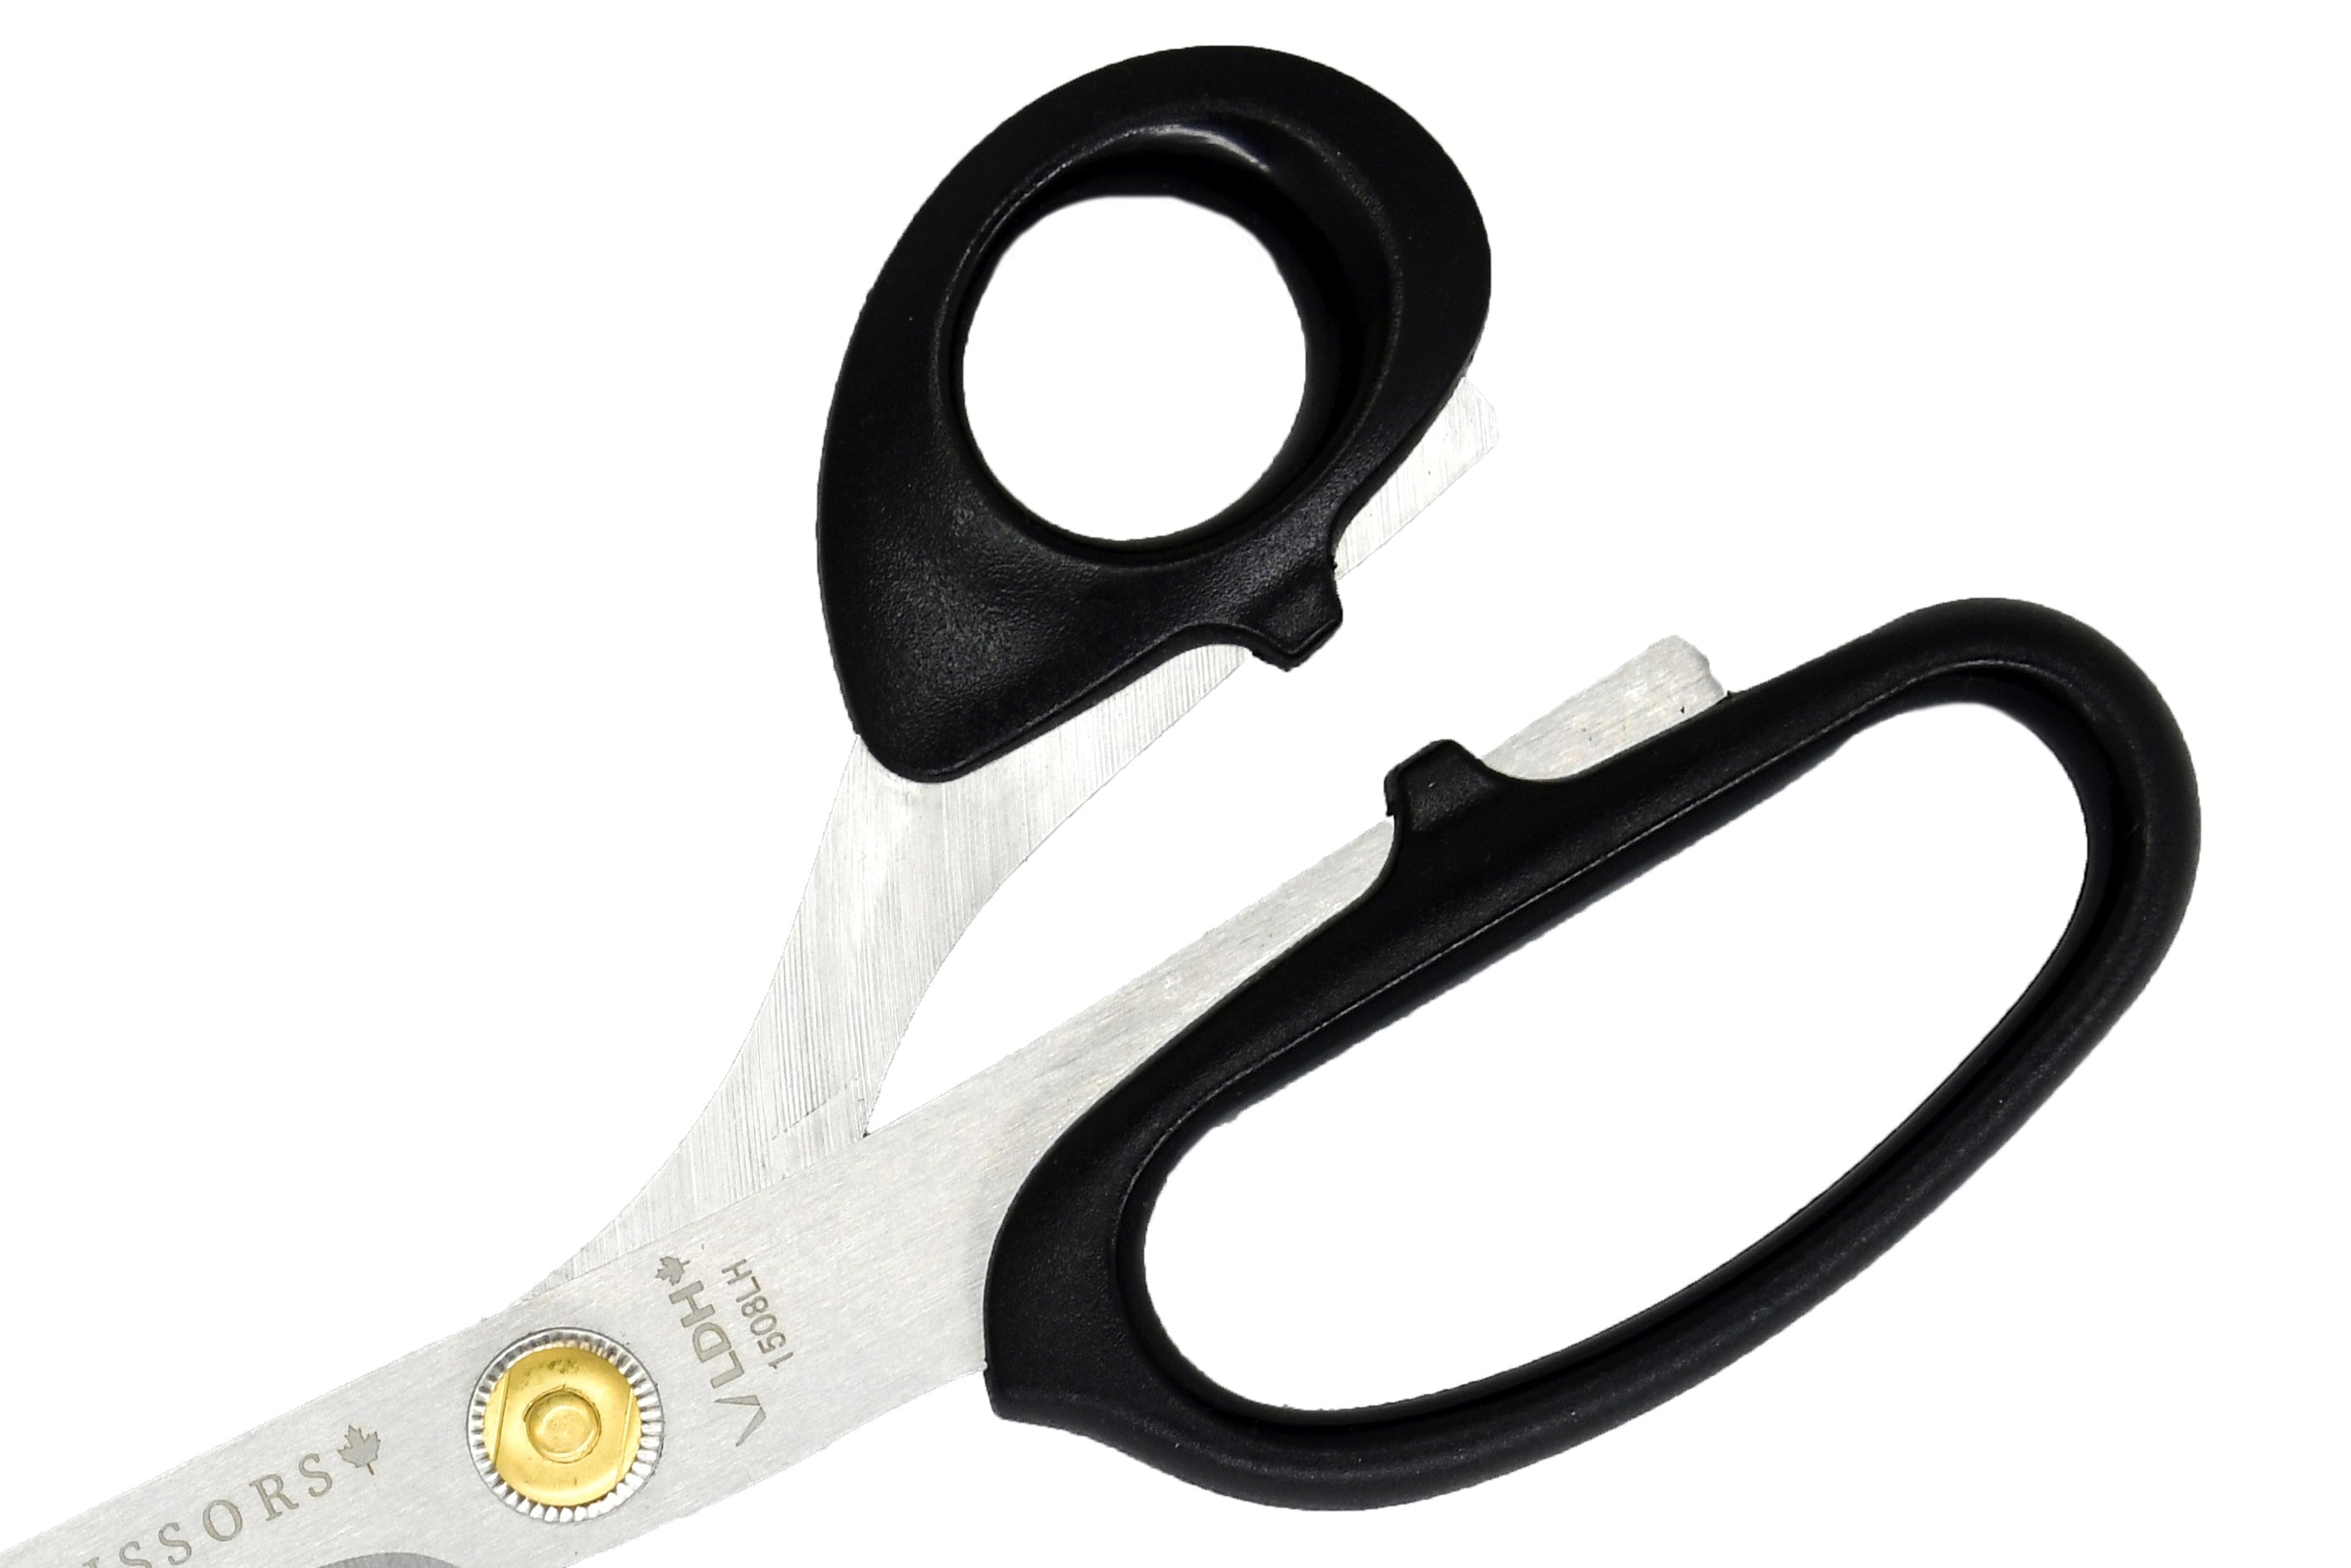 True Left-handed Craft Scissors - LDH Scissors 